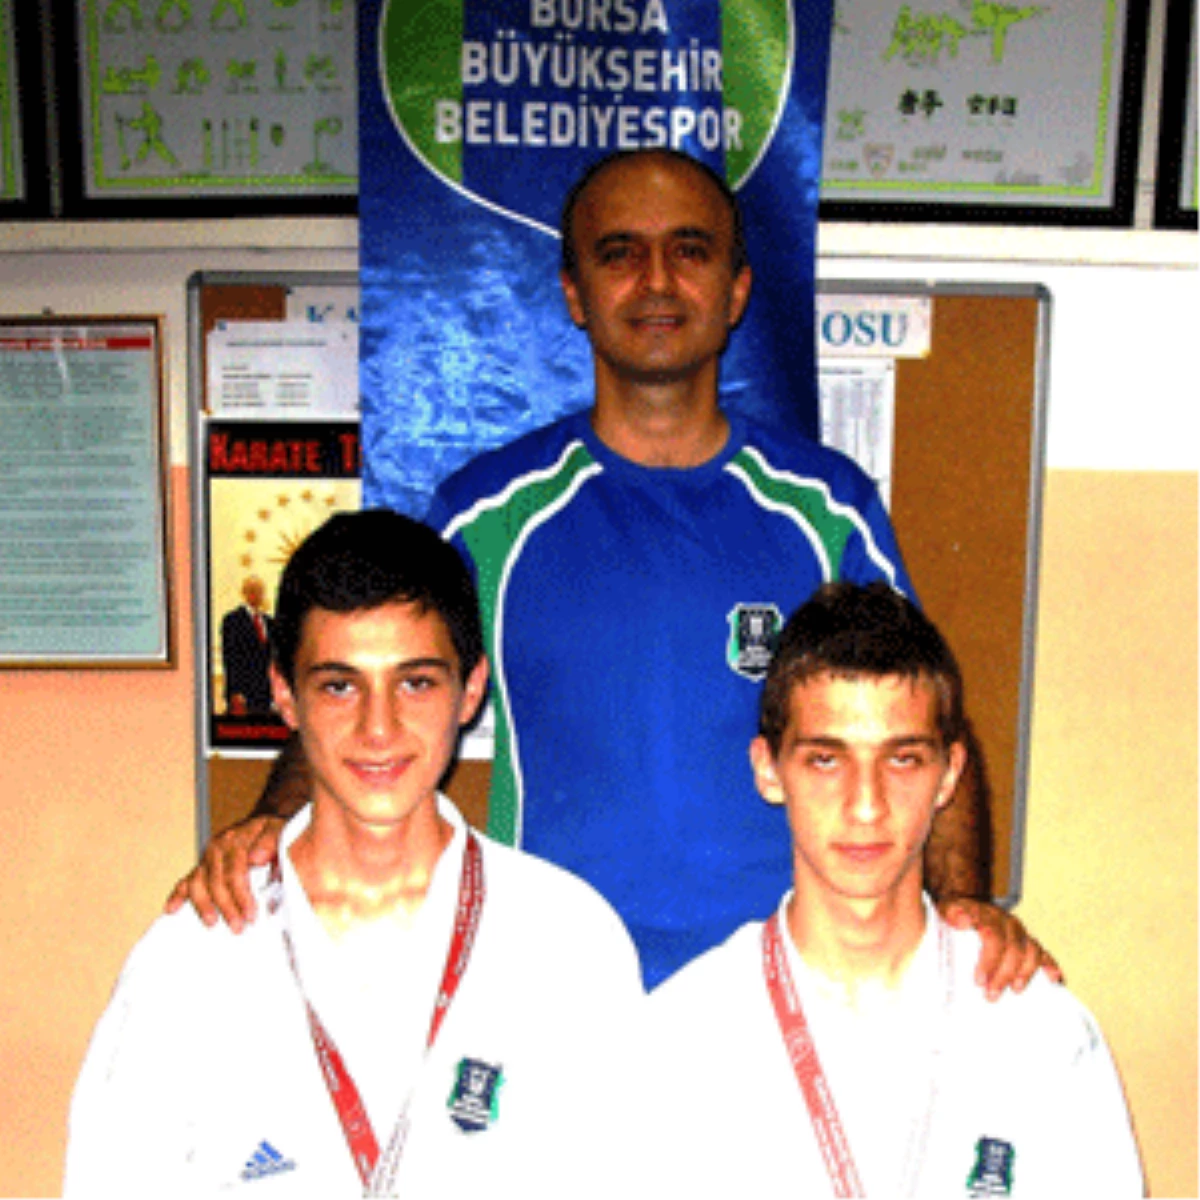 
Bursalı Karatecilerin Büyük Başarısı
